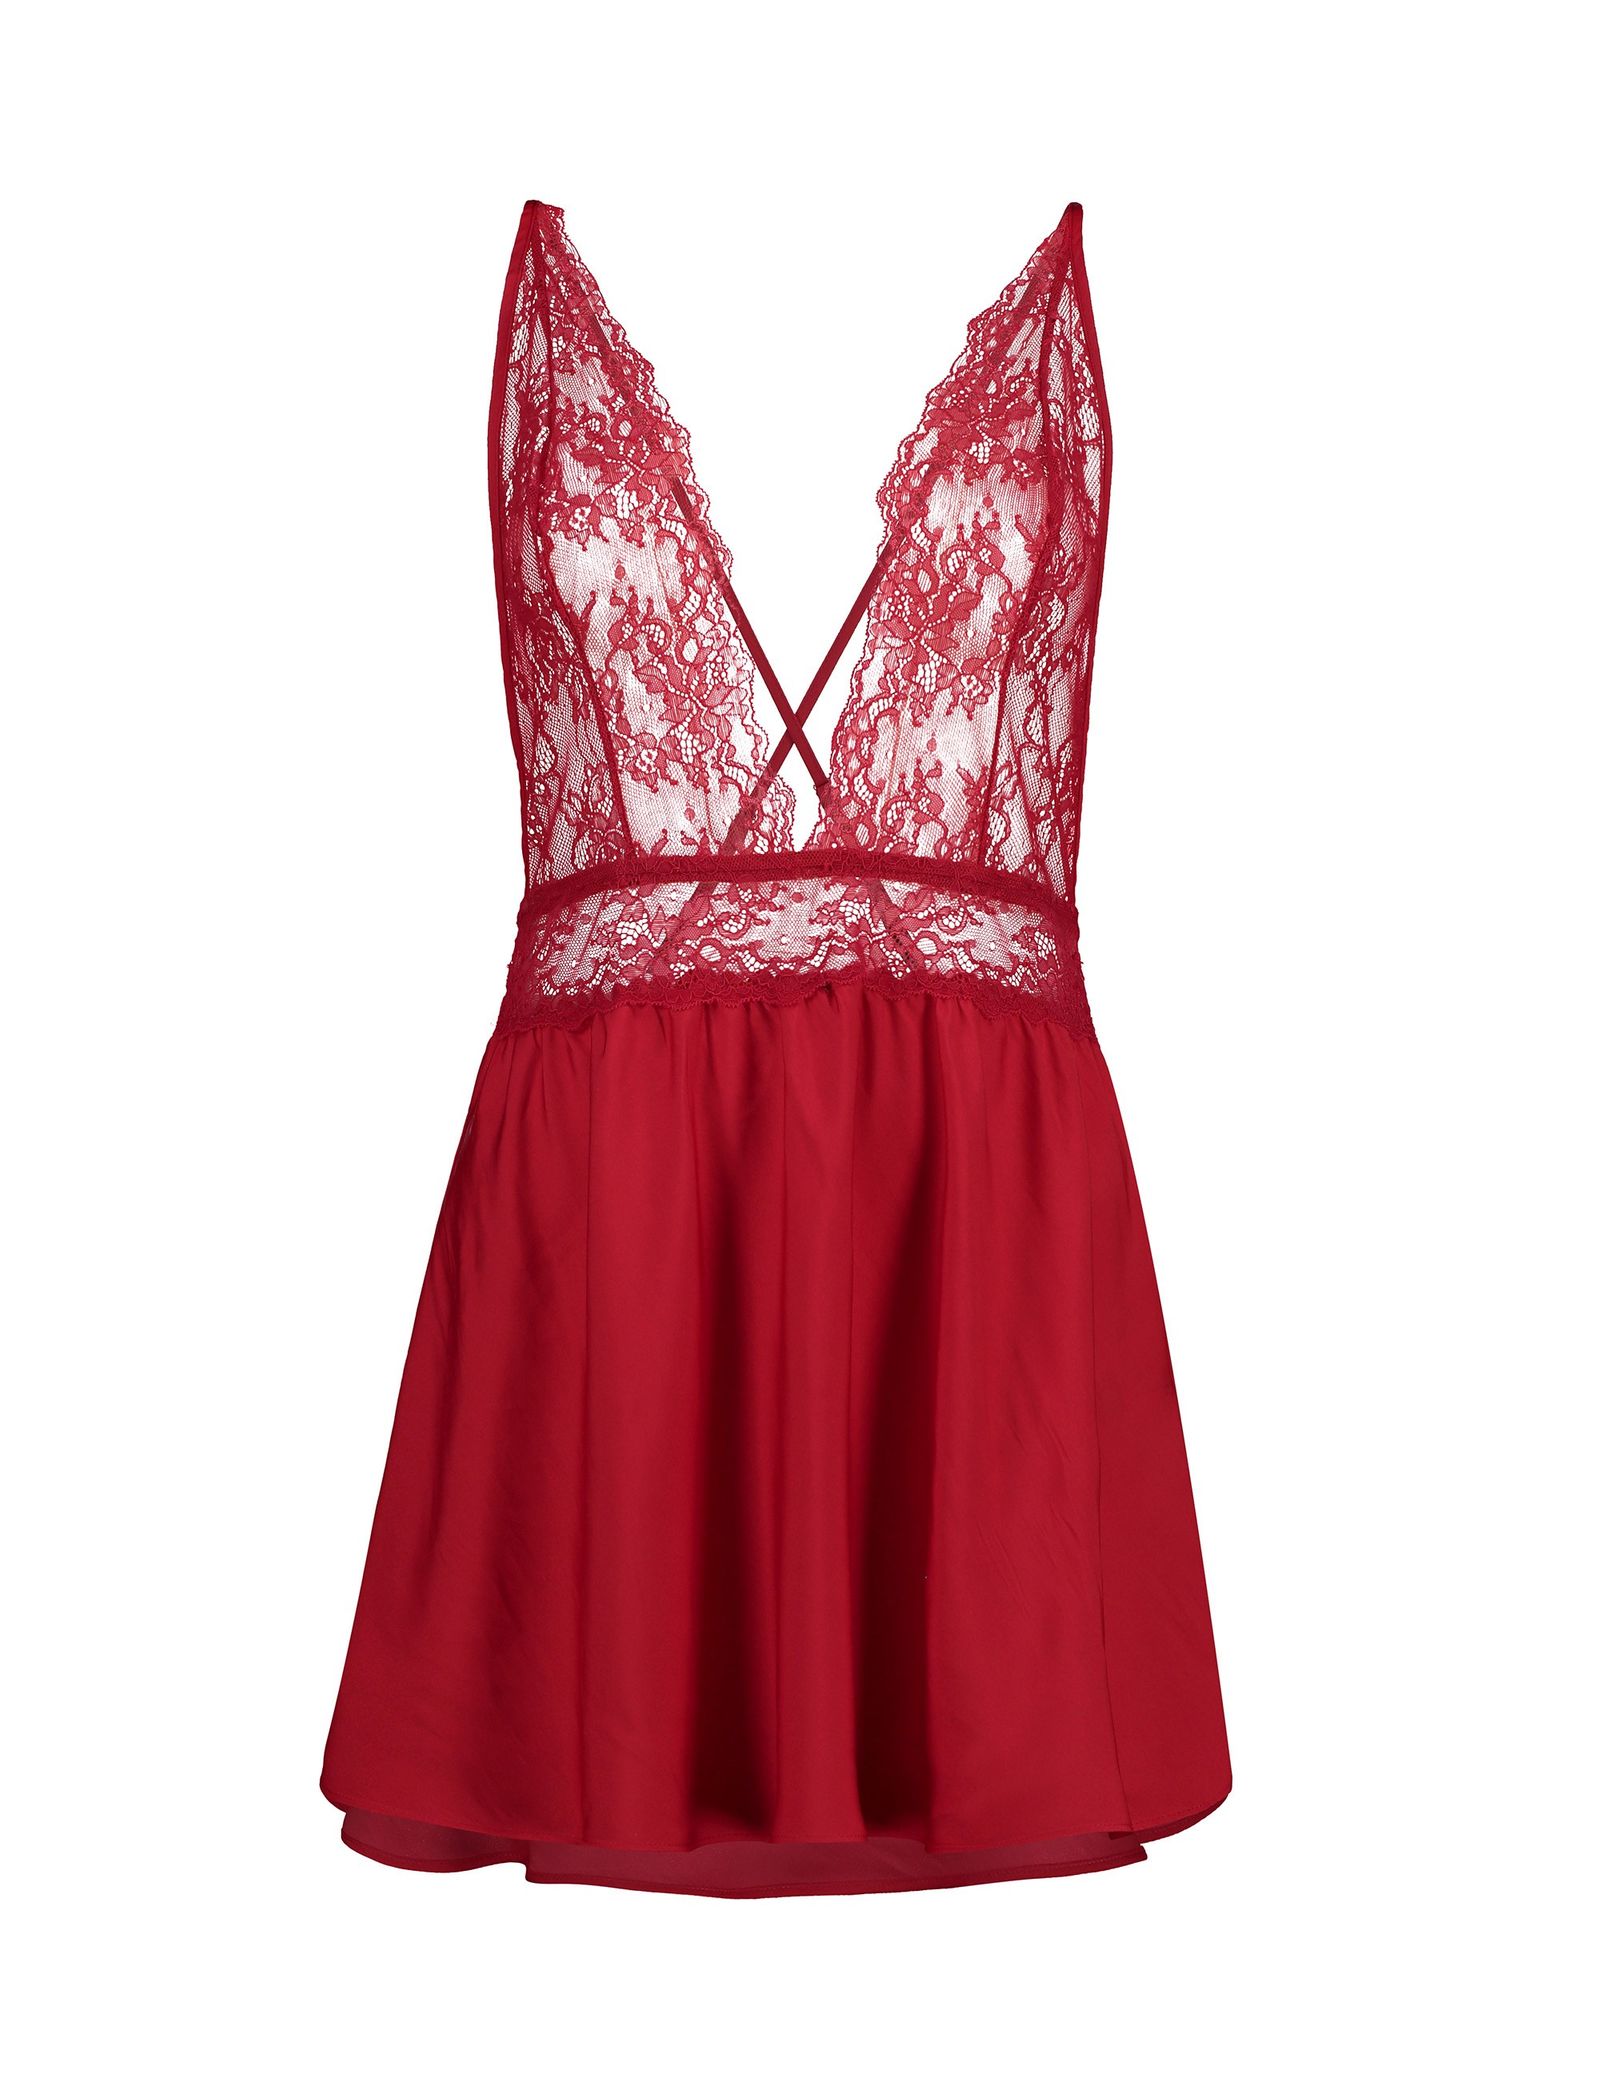 لباس خواب یک تکه زنانه - اتام - قرمز - 2